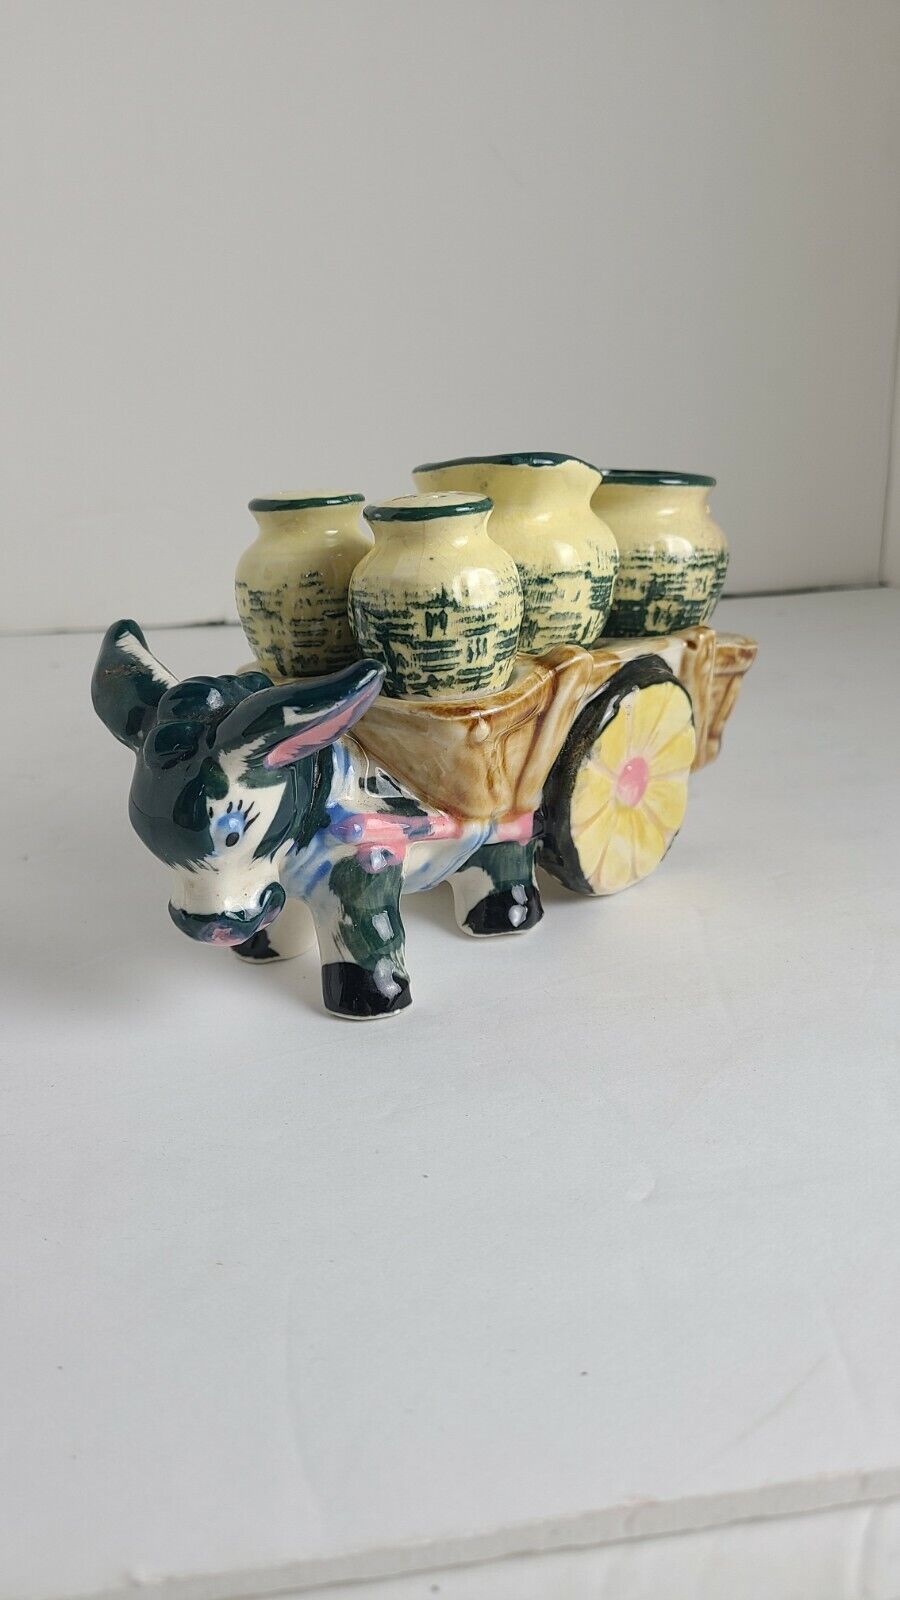 Vintage Relco Ceramic Donkey Pulling Barrels Cart Salt & Pepper Shakers Japan 